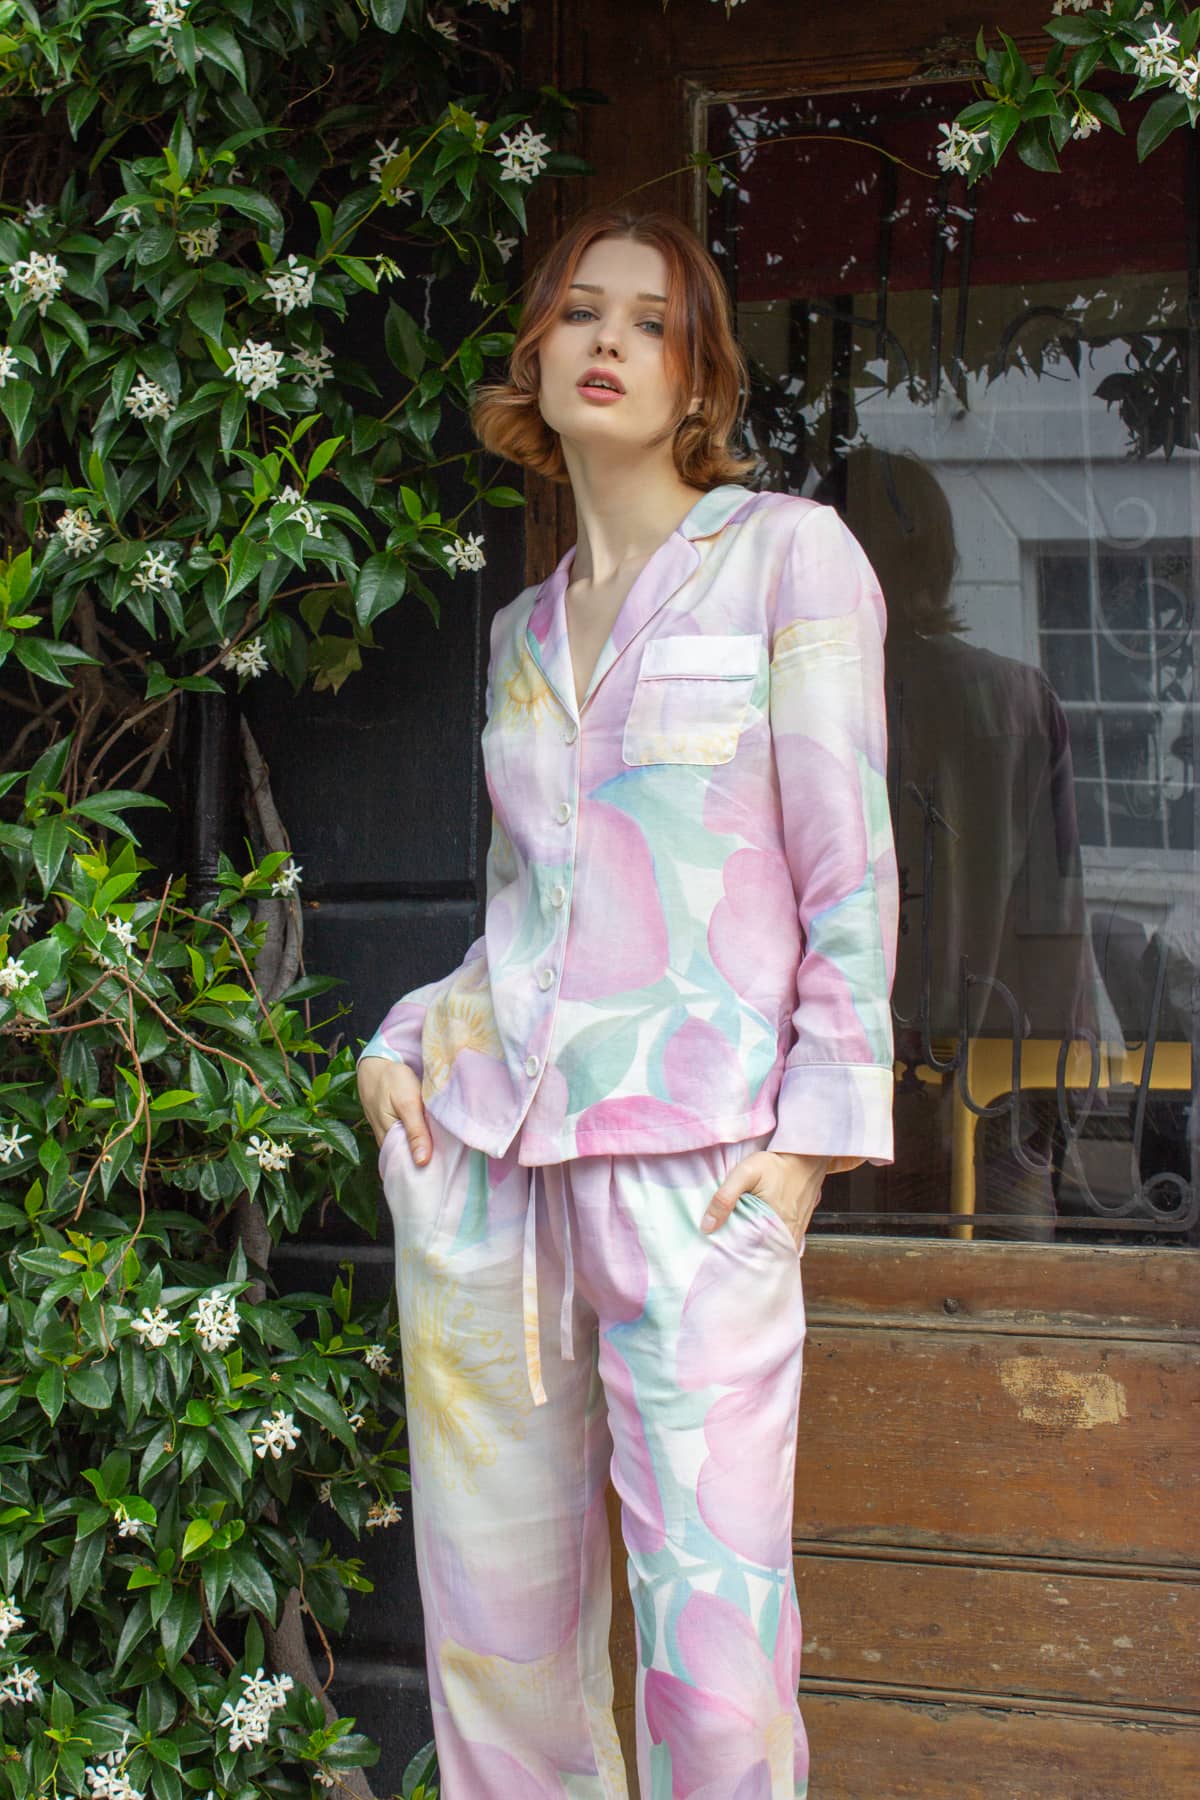 Wild Rose Luxury Pyjamas - In the garden - Orchard Moon - Sustainable Luxury Loungewear